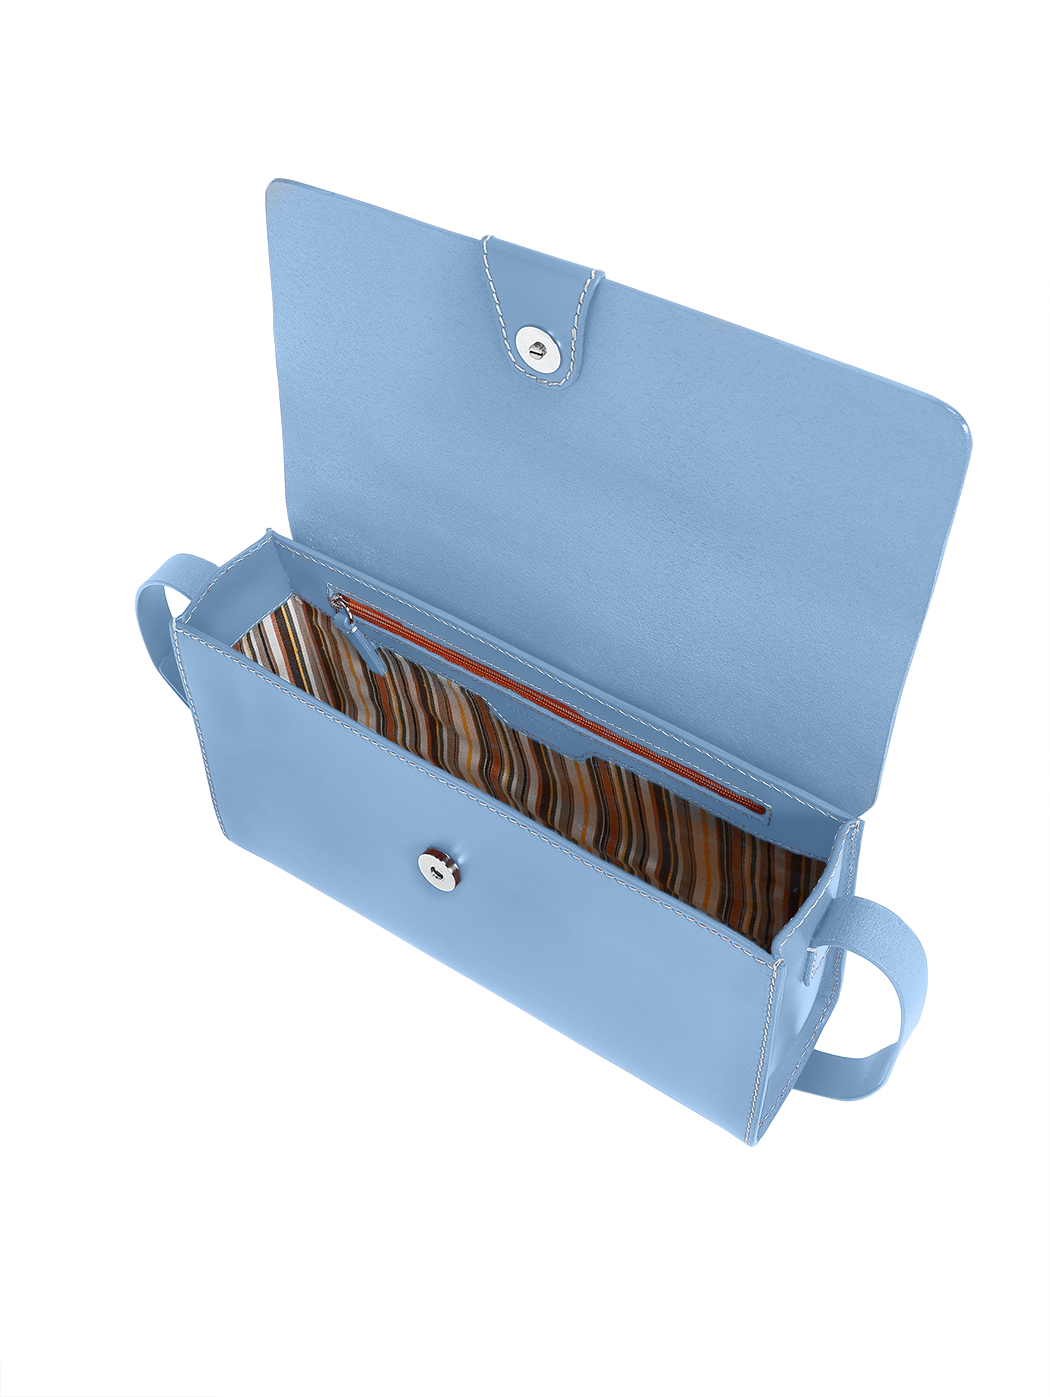 CLARKS Brown Soft Leather Over Shoulder Bag Purse Medium ECU | eBay